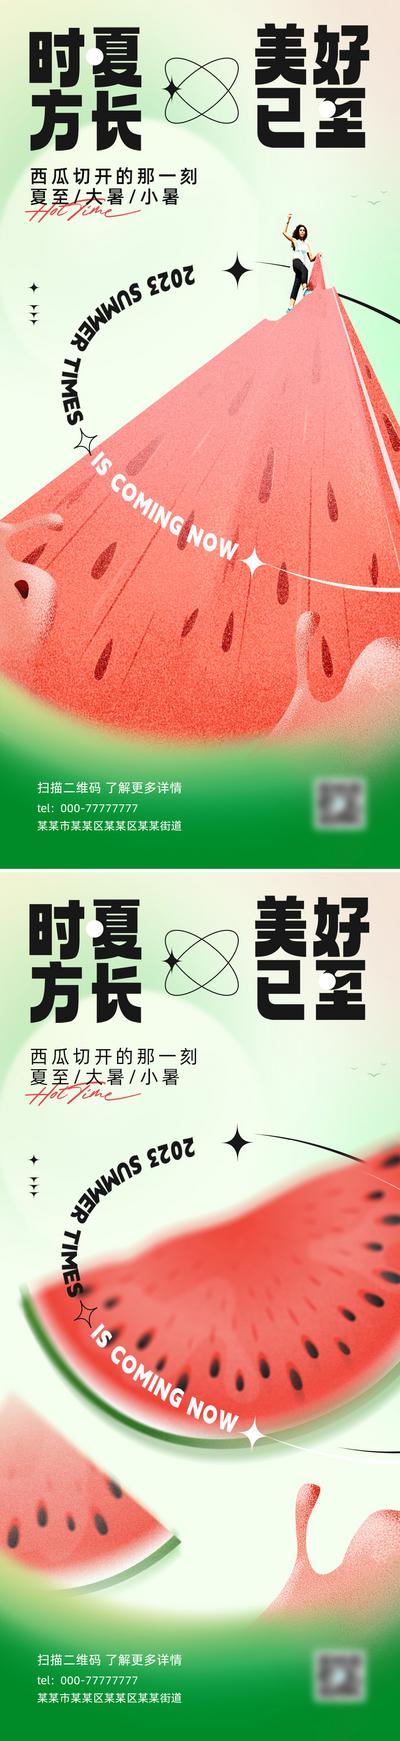 南门网 广告 海报 插画 夏至 二十四节气 西瓜 弥散 渐变 节气 小暑 大暑 系列